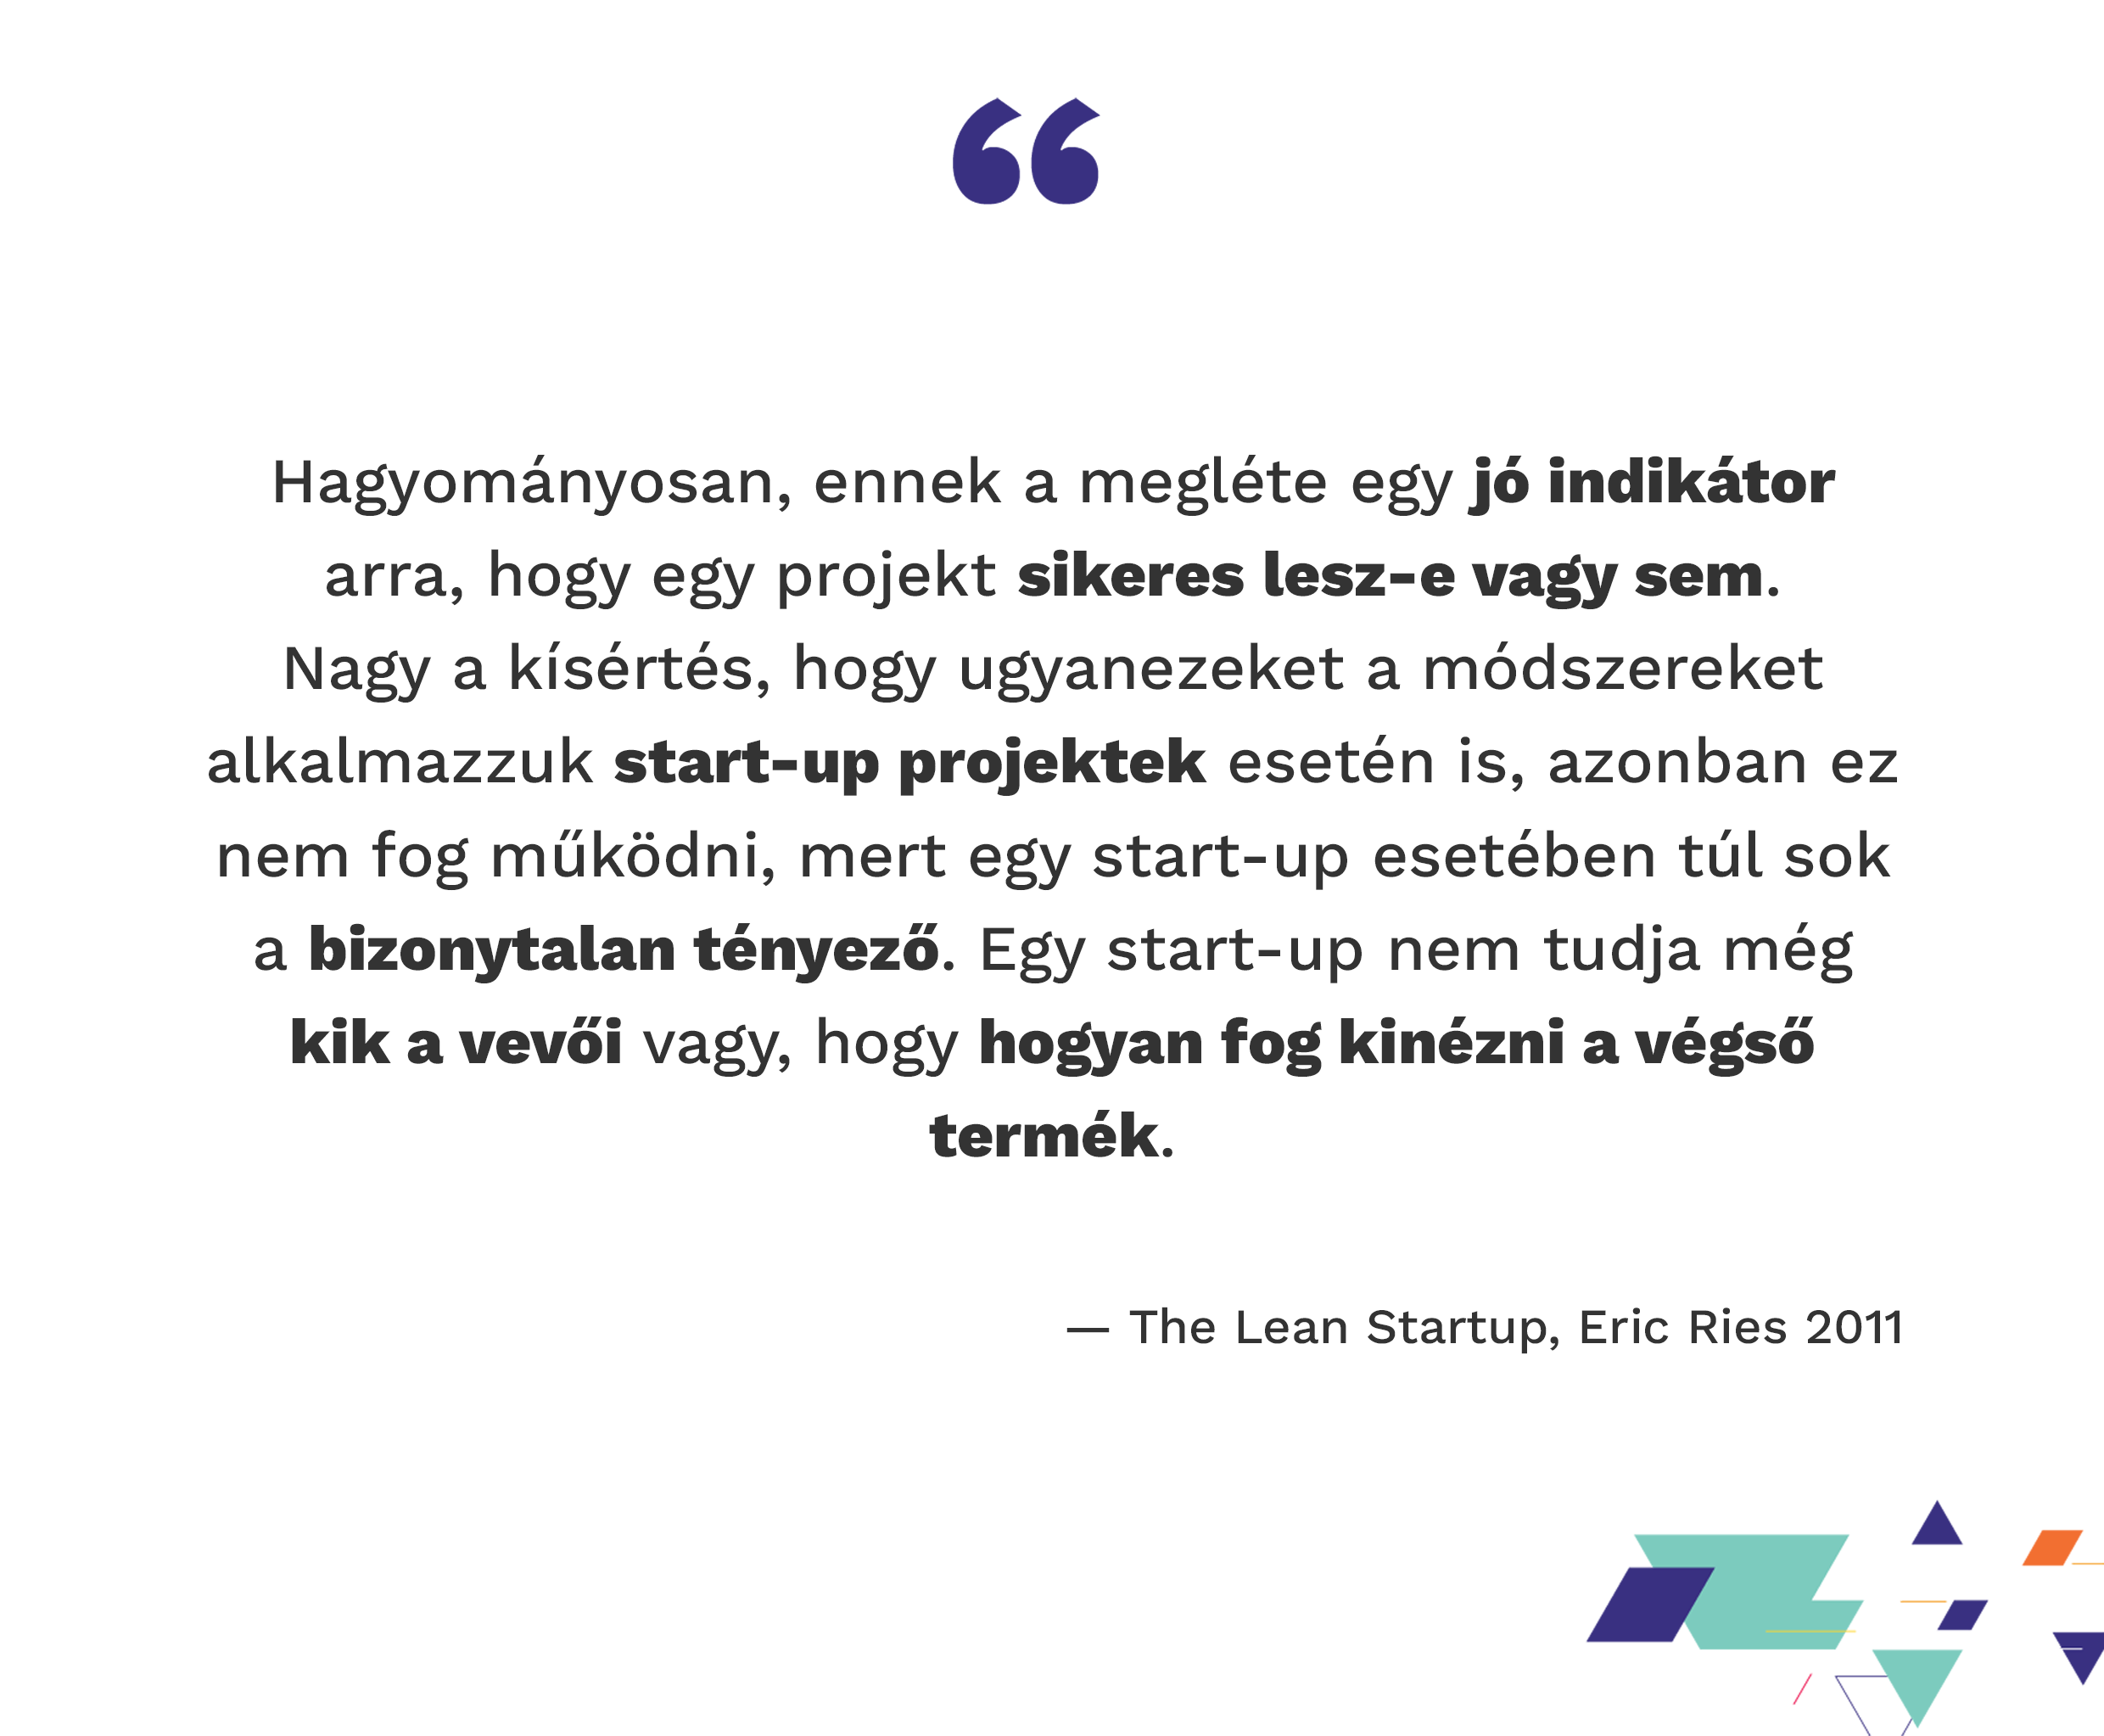 Hagyományosan, ennek a megléte egy jó indikátor arra, hogy egy projekt sikeres lesz-e vagy sem. Nagy a kísértés, hogy ugyanezeket a módszereket alkalmazzuk startup projektek esetén is, azonban ez nem fog működni, mert egy startup esetében túl sok a bizonytalan tényező. Egy startup nem tudja még kik a vevői vagy, hogy hogyan fog kinézni a végső termék. — The Lean Startup, Eric Ries 2011